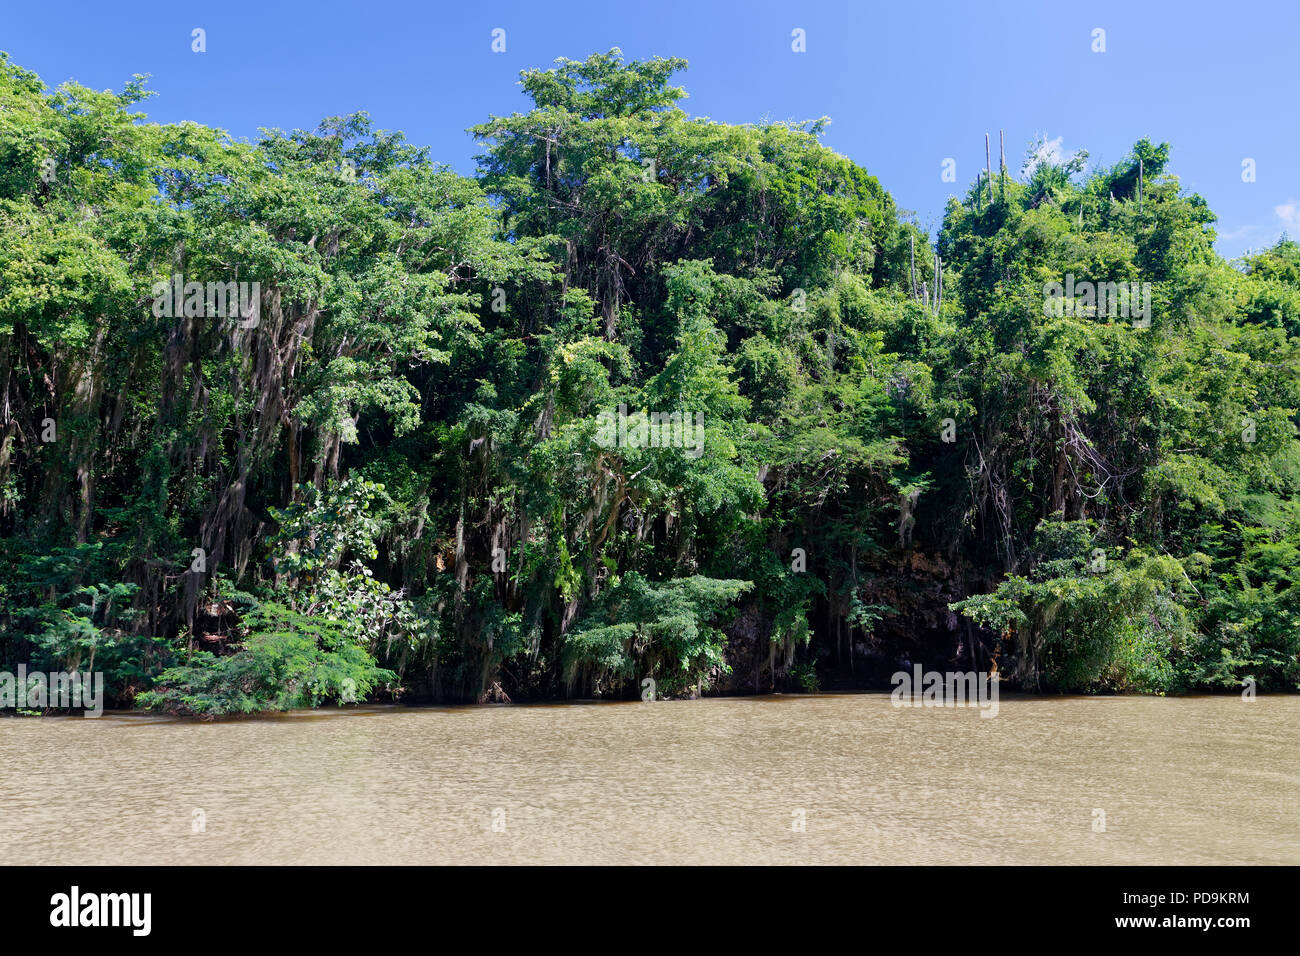 El bosque de manglar en el río Yuma, Boca de Yuma, República Dominicana Foto de stock